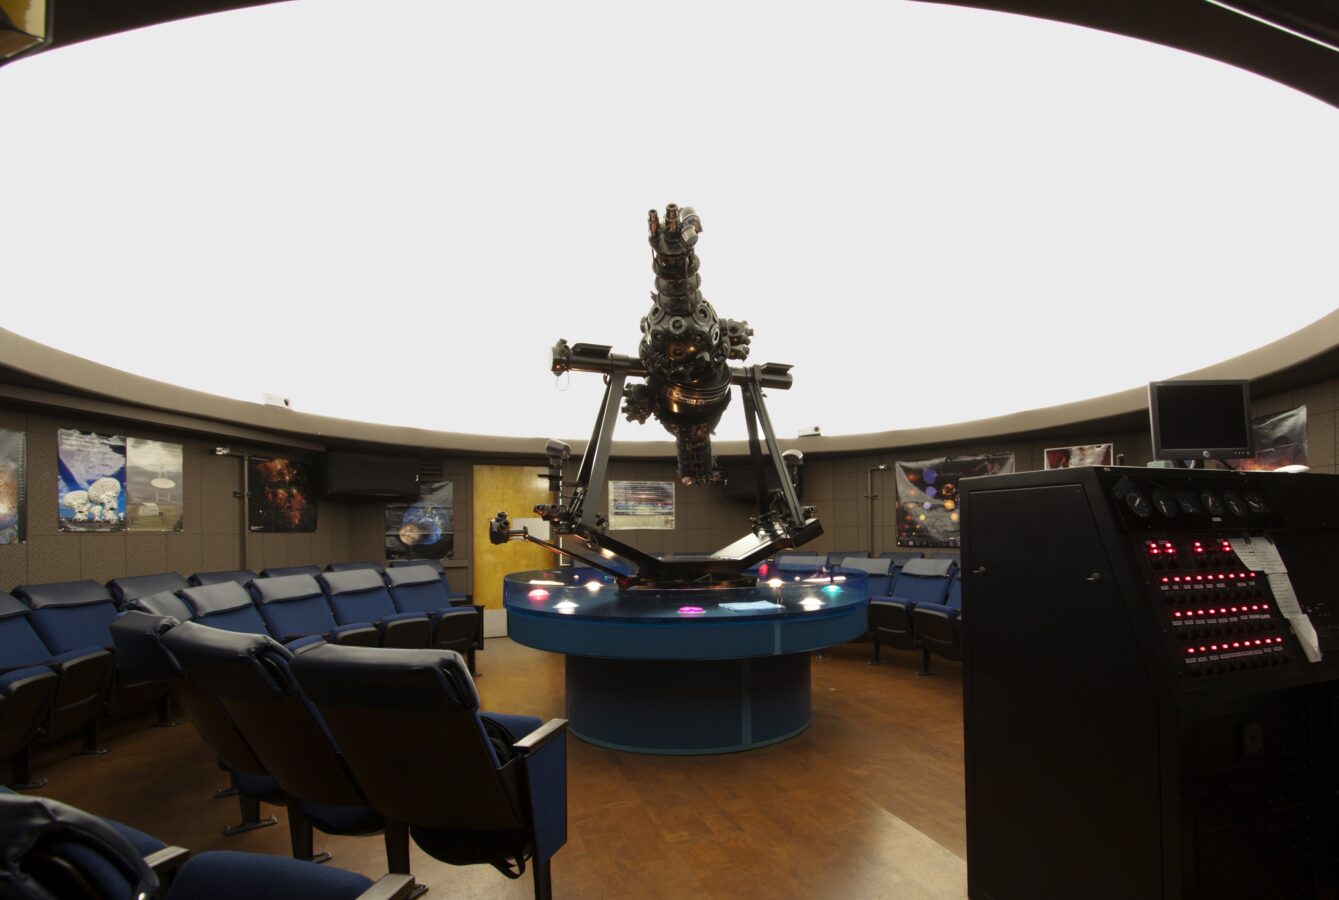 Interior of UCLA planetarium